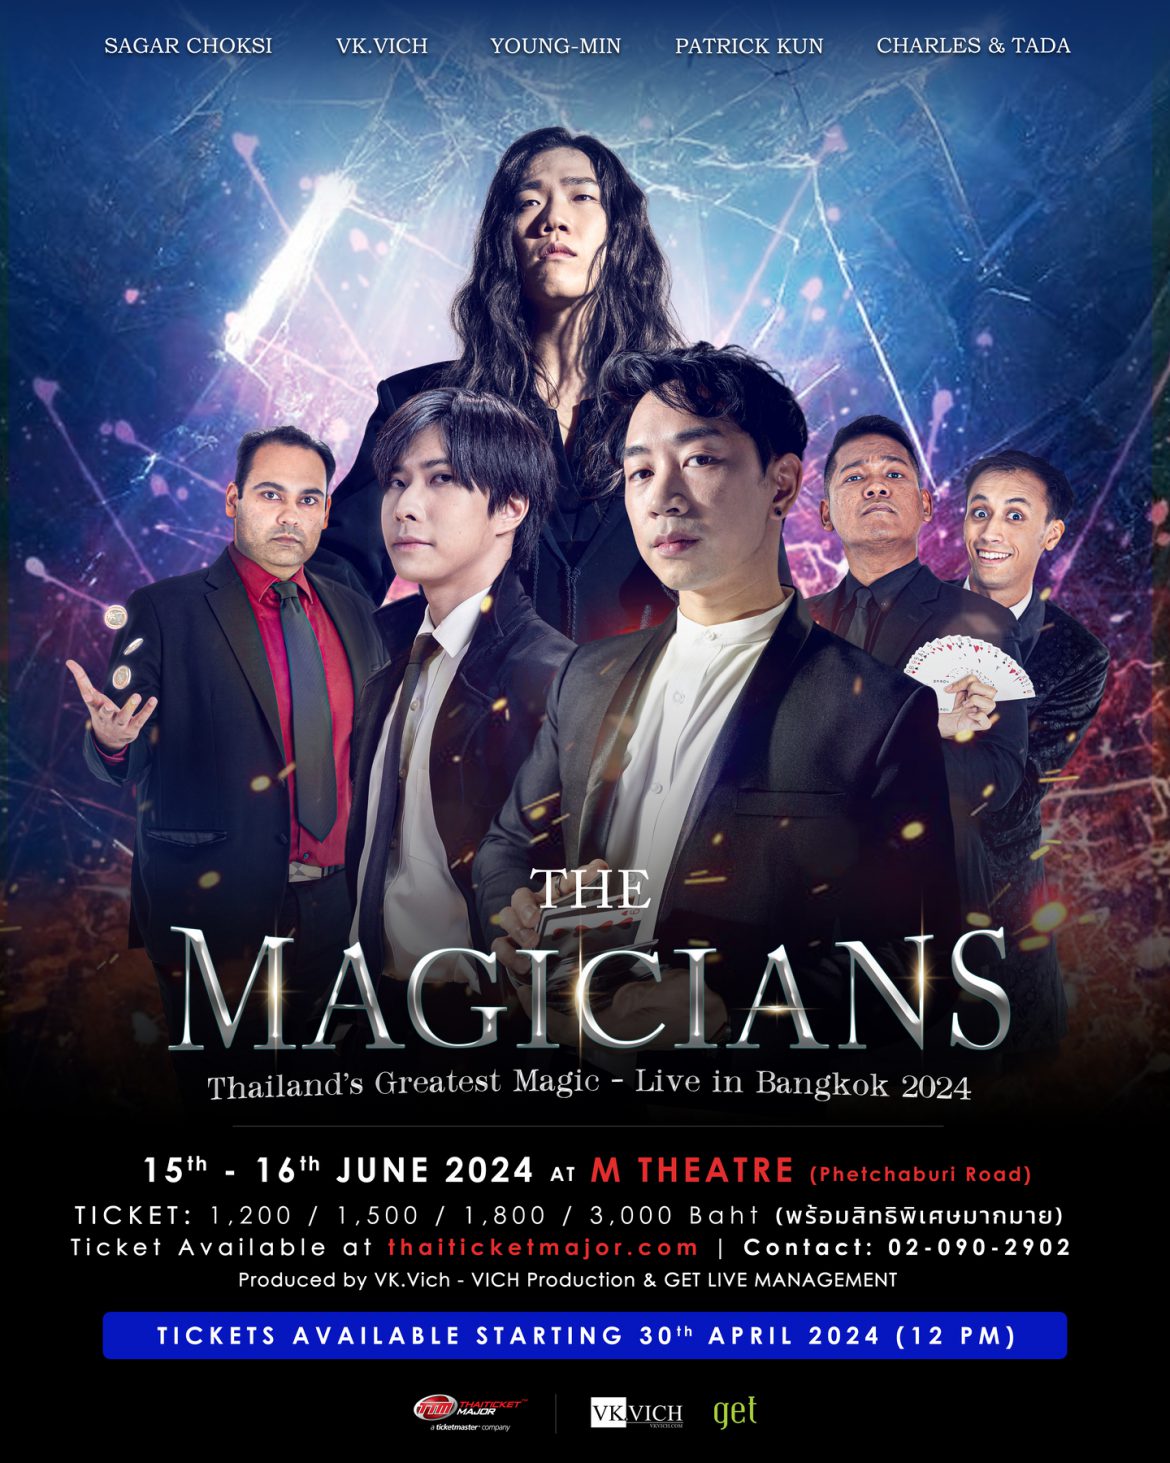 เตรียมพบกับประสบการณ์สุดพิเศษ THE MAGICIANS – Live in Bangkok 2024 การแสดงมายากลแบบ Theatre Show อย่างเต็มรูปแบบในประเทศไทย  ในวันที่ 15 – 16 มิถุนายน 2024 ณ โรงละครเอ็มเธียเตอร์